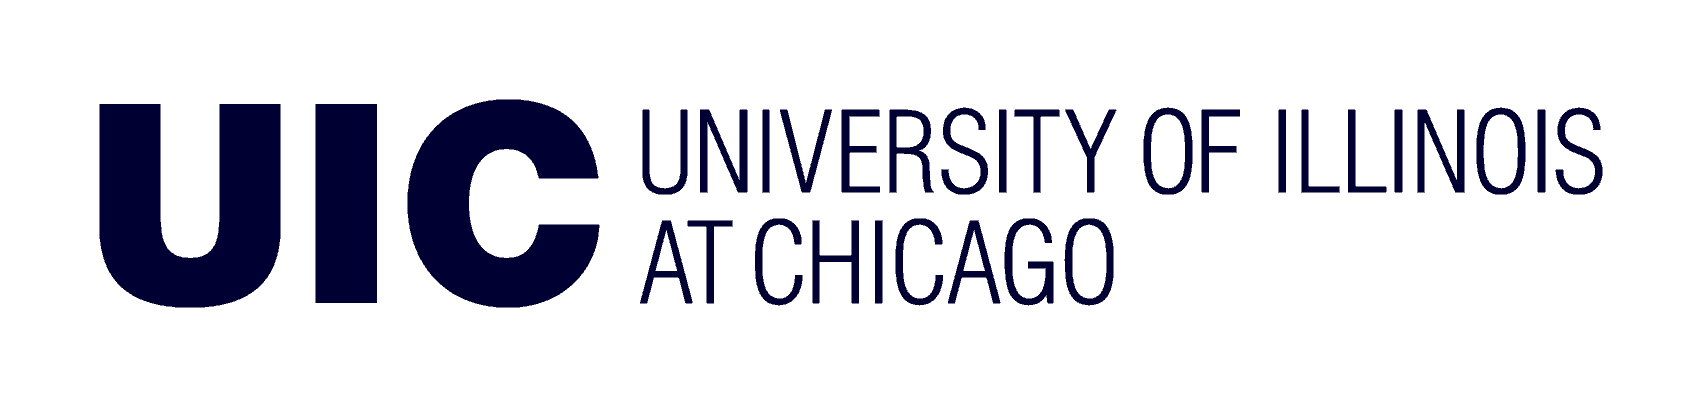 University of Illinois Chicago Coding Bootcamp logo